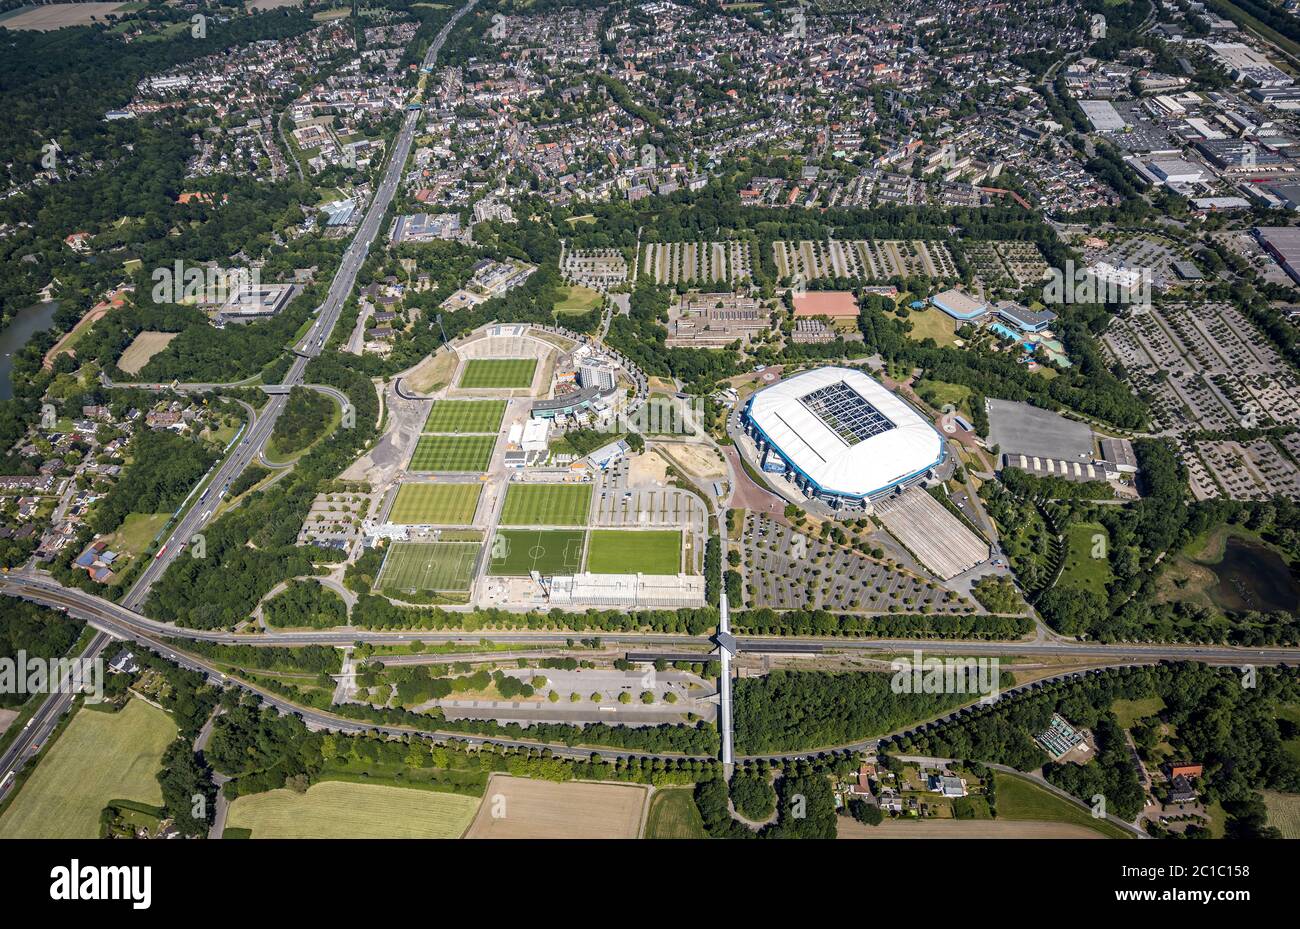 Vista aerea, Schalke 04, Arena Auf Schalke, Veltins-Arena, stadio di calcio, campi di allenamento del FC Schalke 04, Courtyaerd Hotel, Medicos. AufSchalke Foto Stock